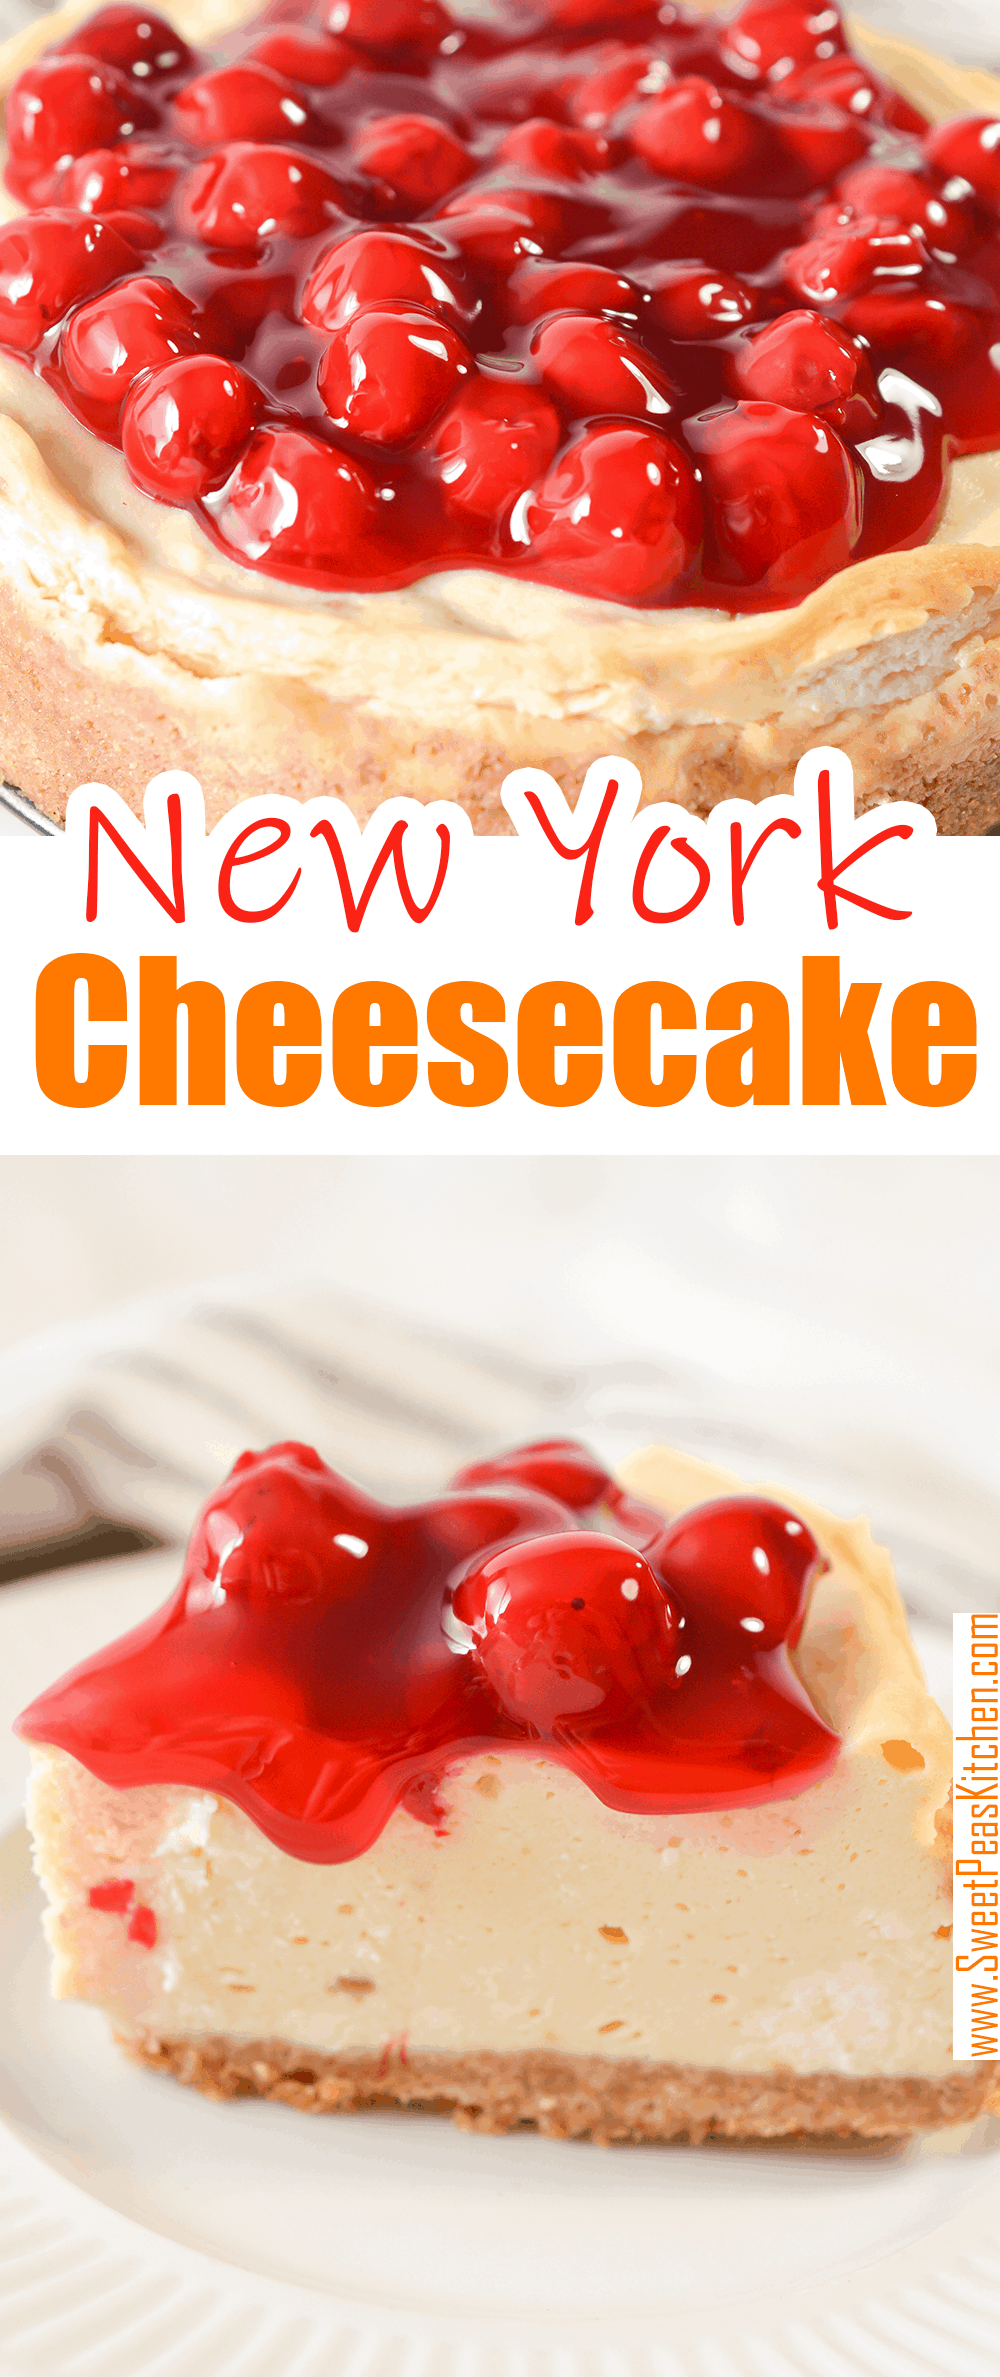 Classic New York Cheesecake